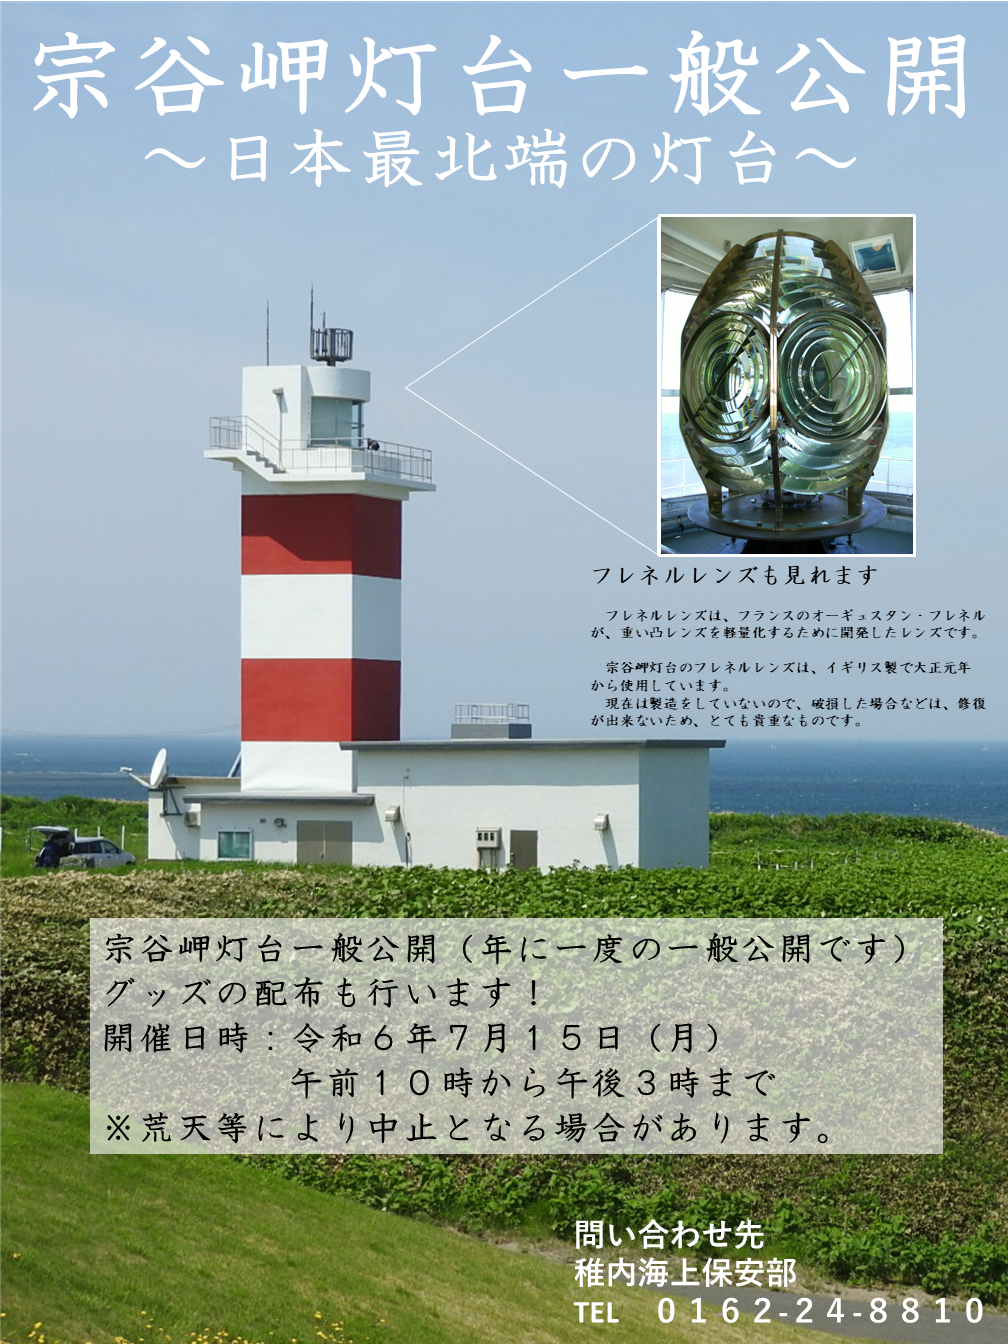 宗谷岬灯台の一般公開について～日本最北端の灯台に登ろう！～